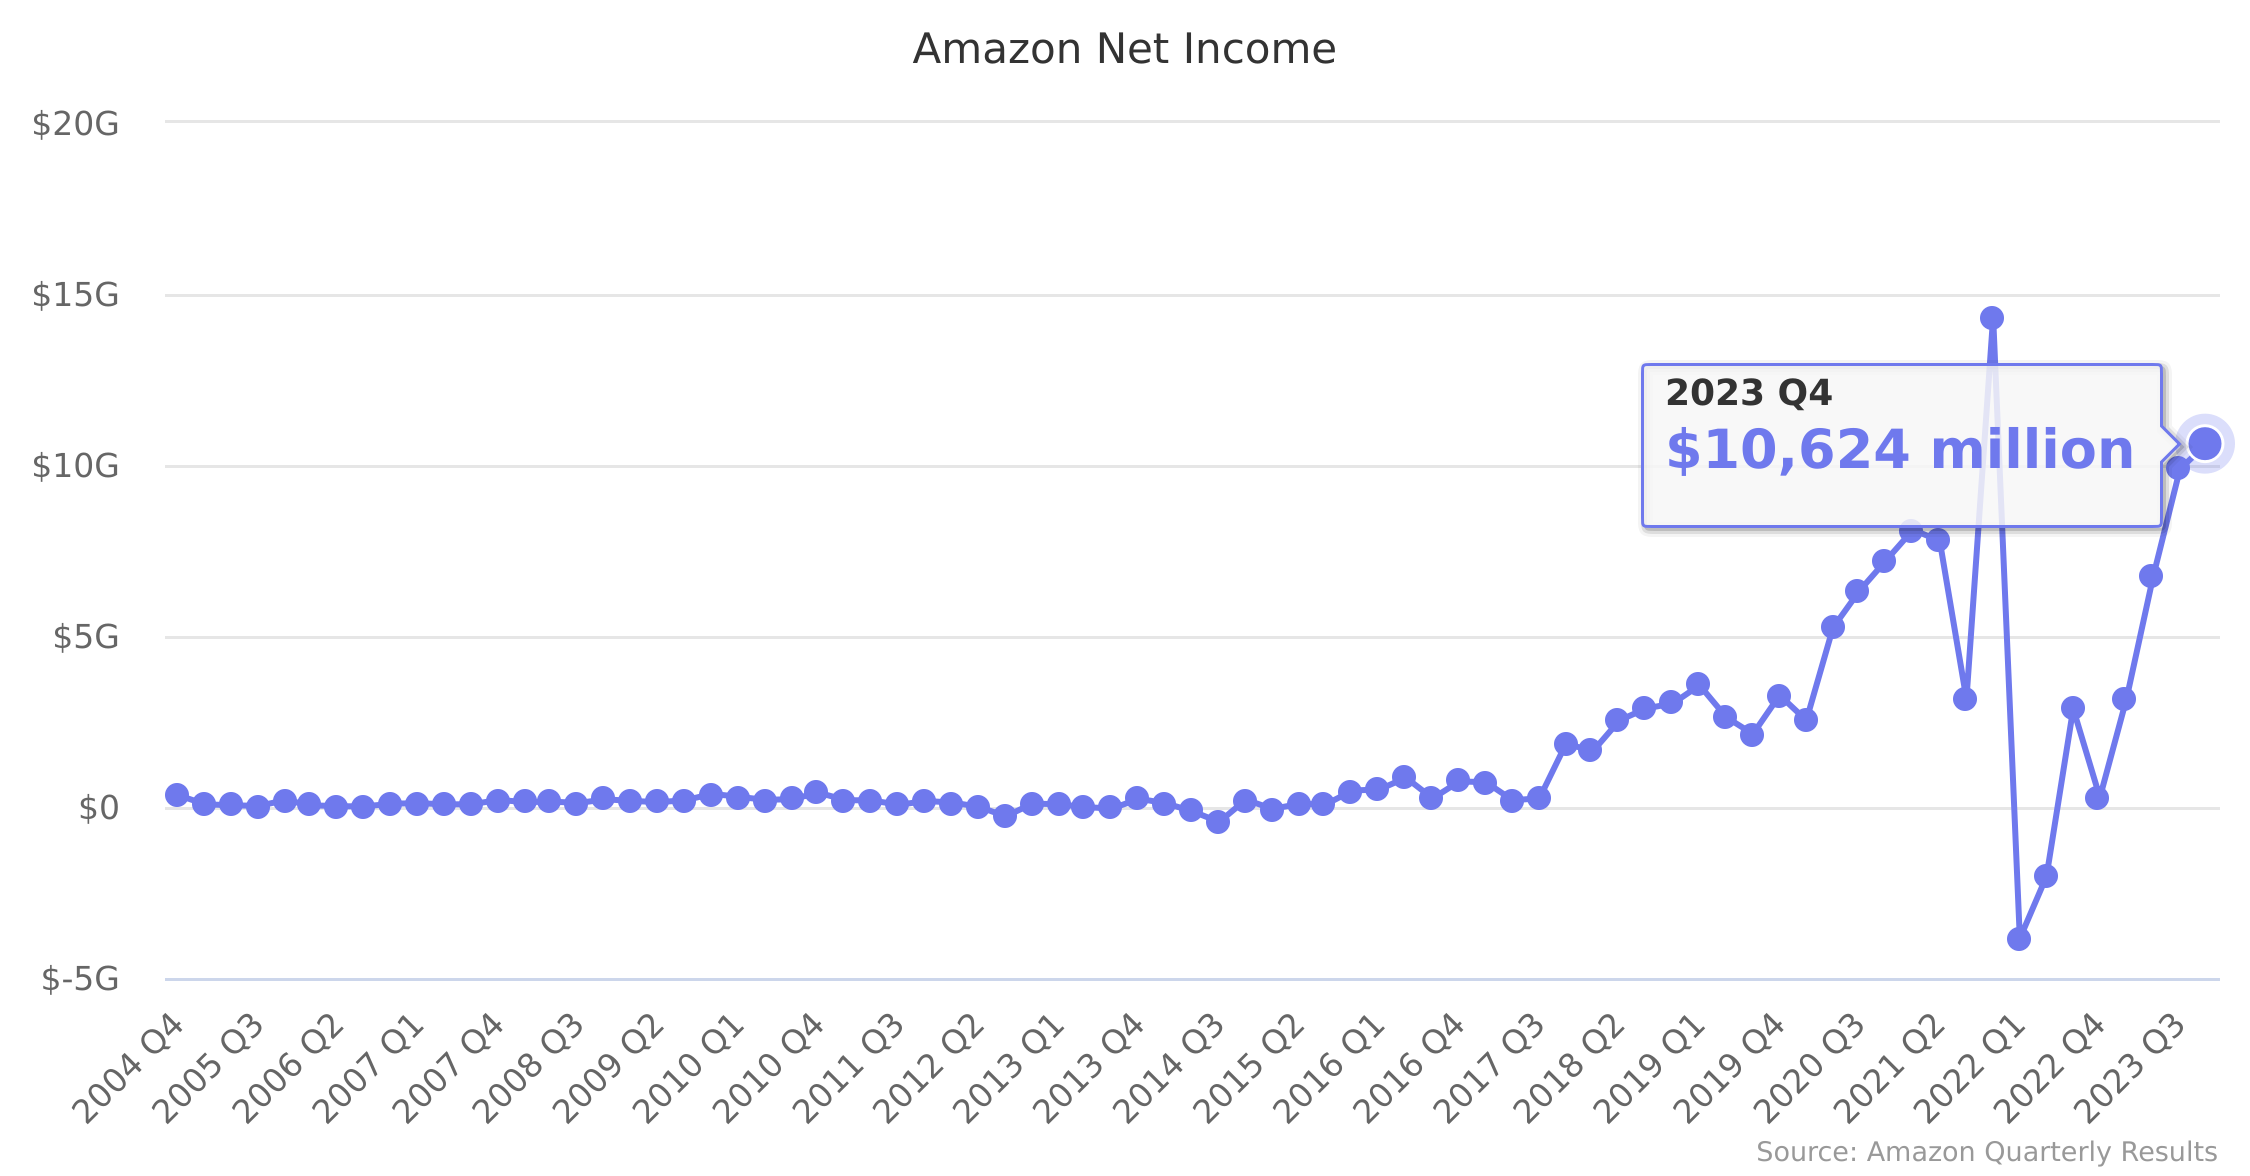 Amazon Net Income 2004-2022